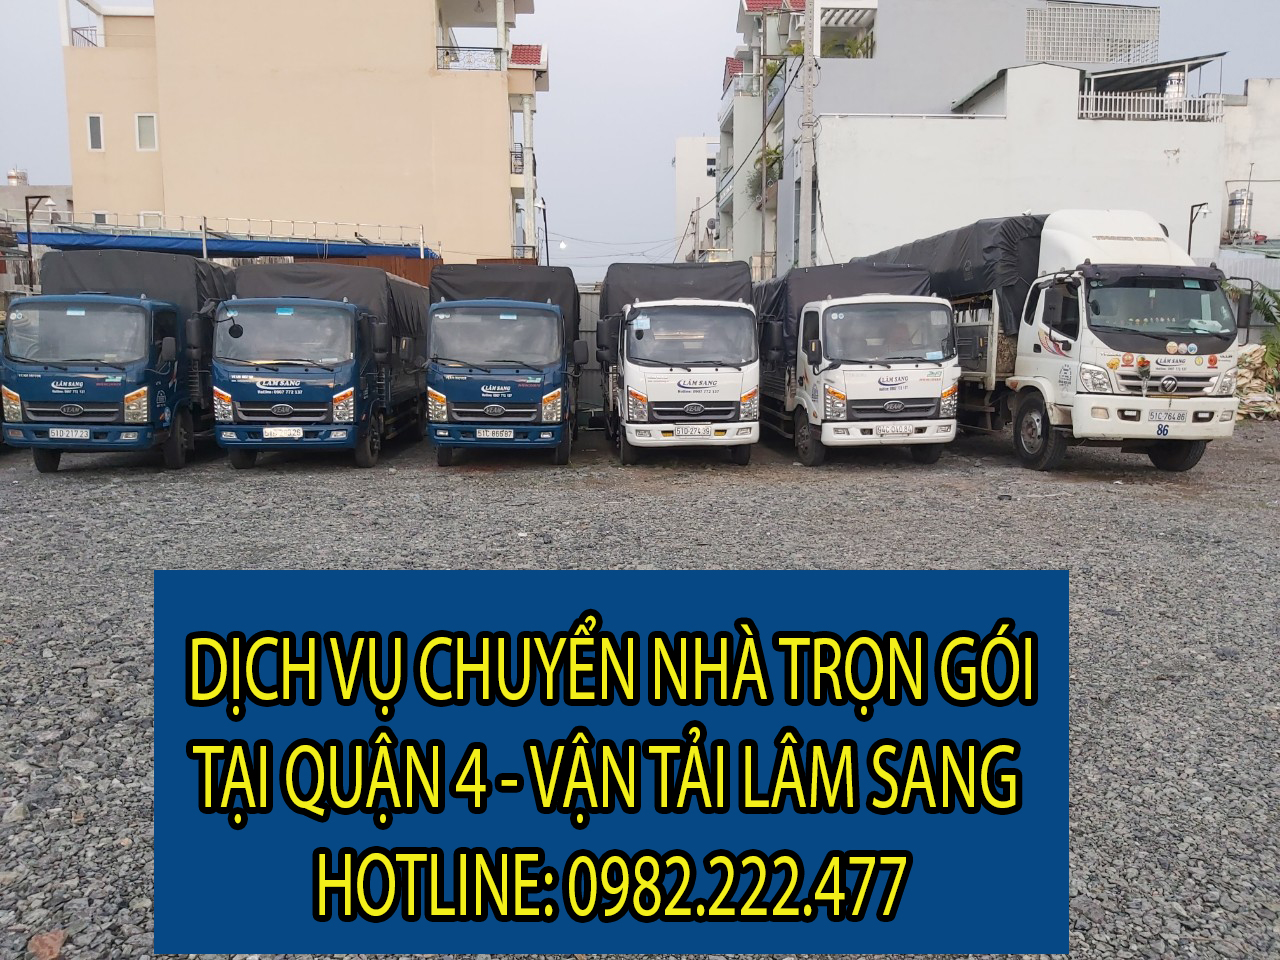 Dịch vụ chuyển nhà trọn gói tại Quận 4 - Vận tải Lâm Sang